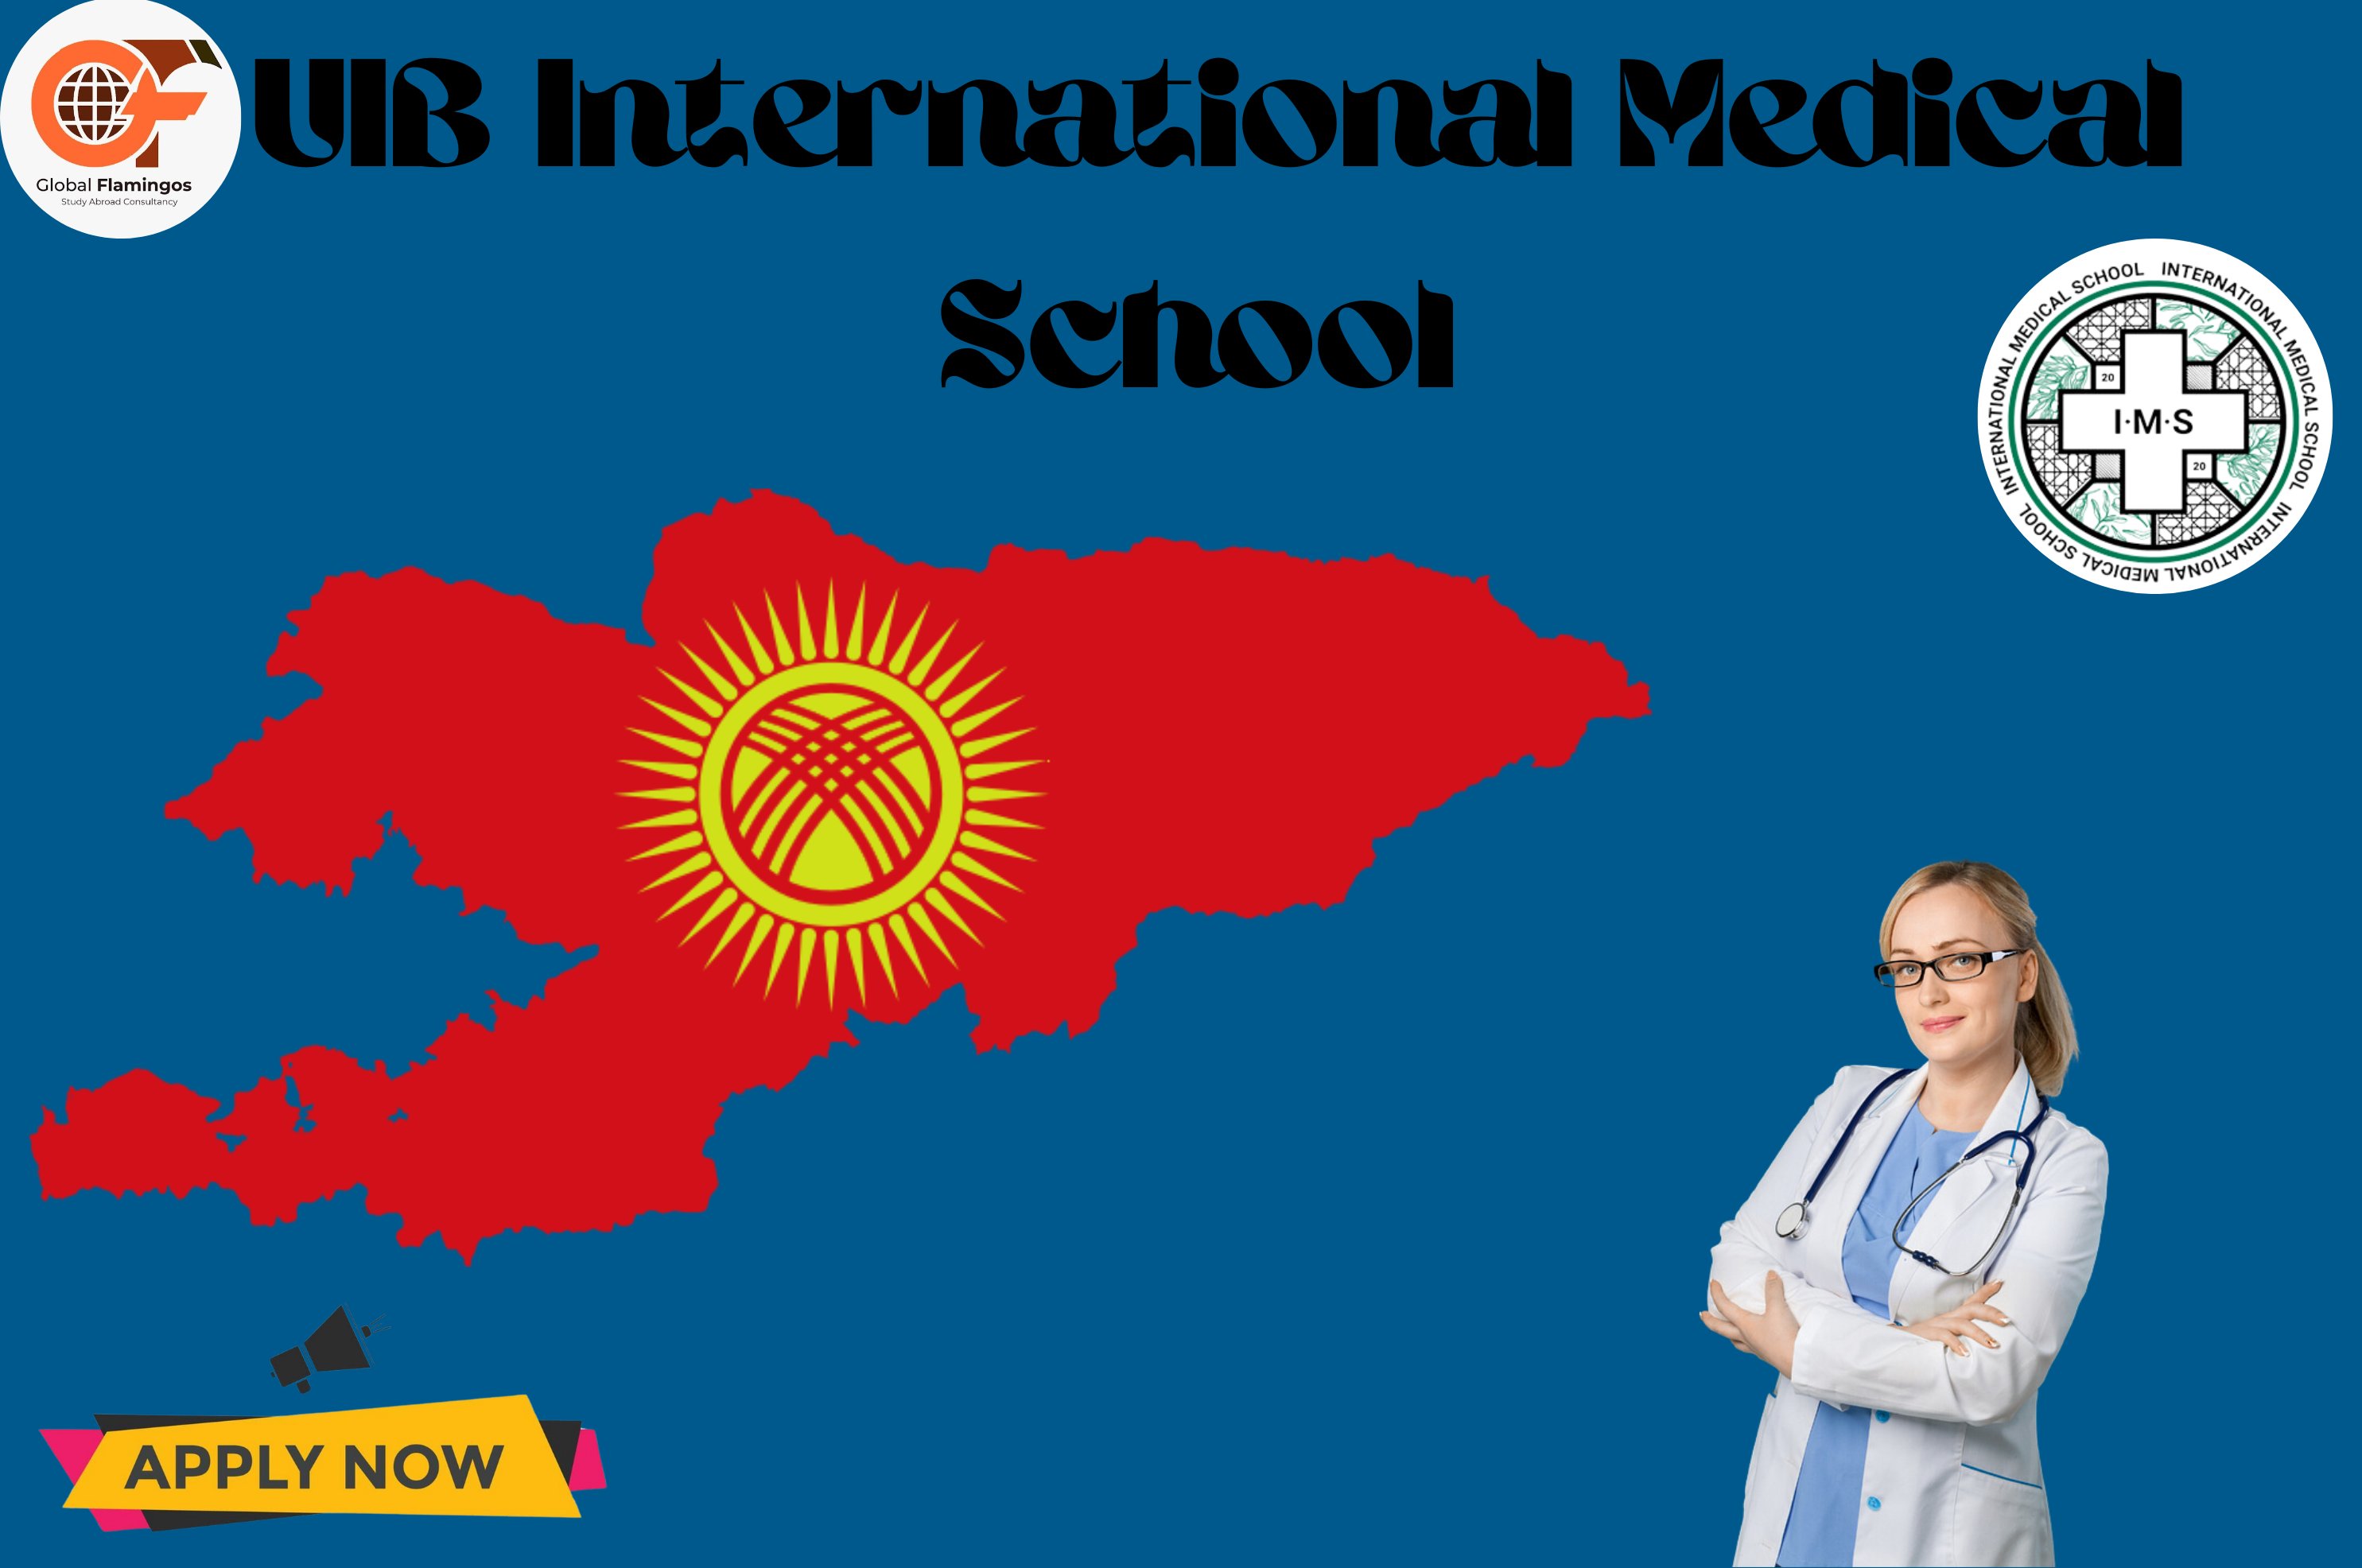 UIB International Medical School